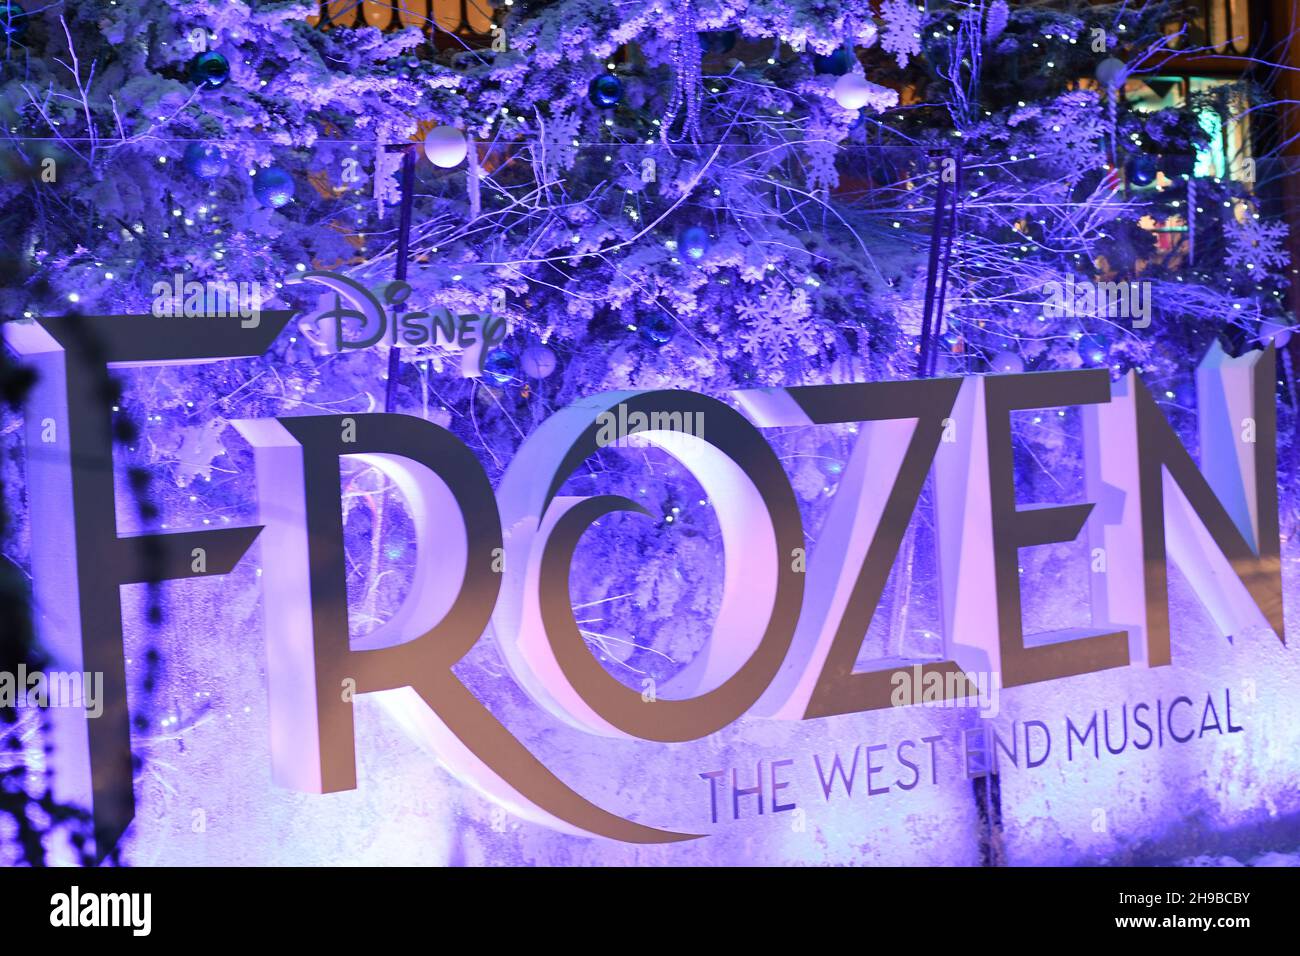 Disney's congelato grande segno che fa pubblicità al West End musical con una scena wintery dietro di esso Foto Stock